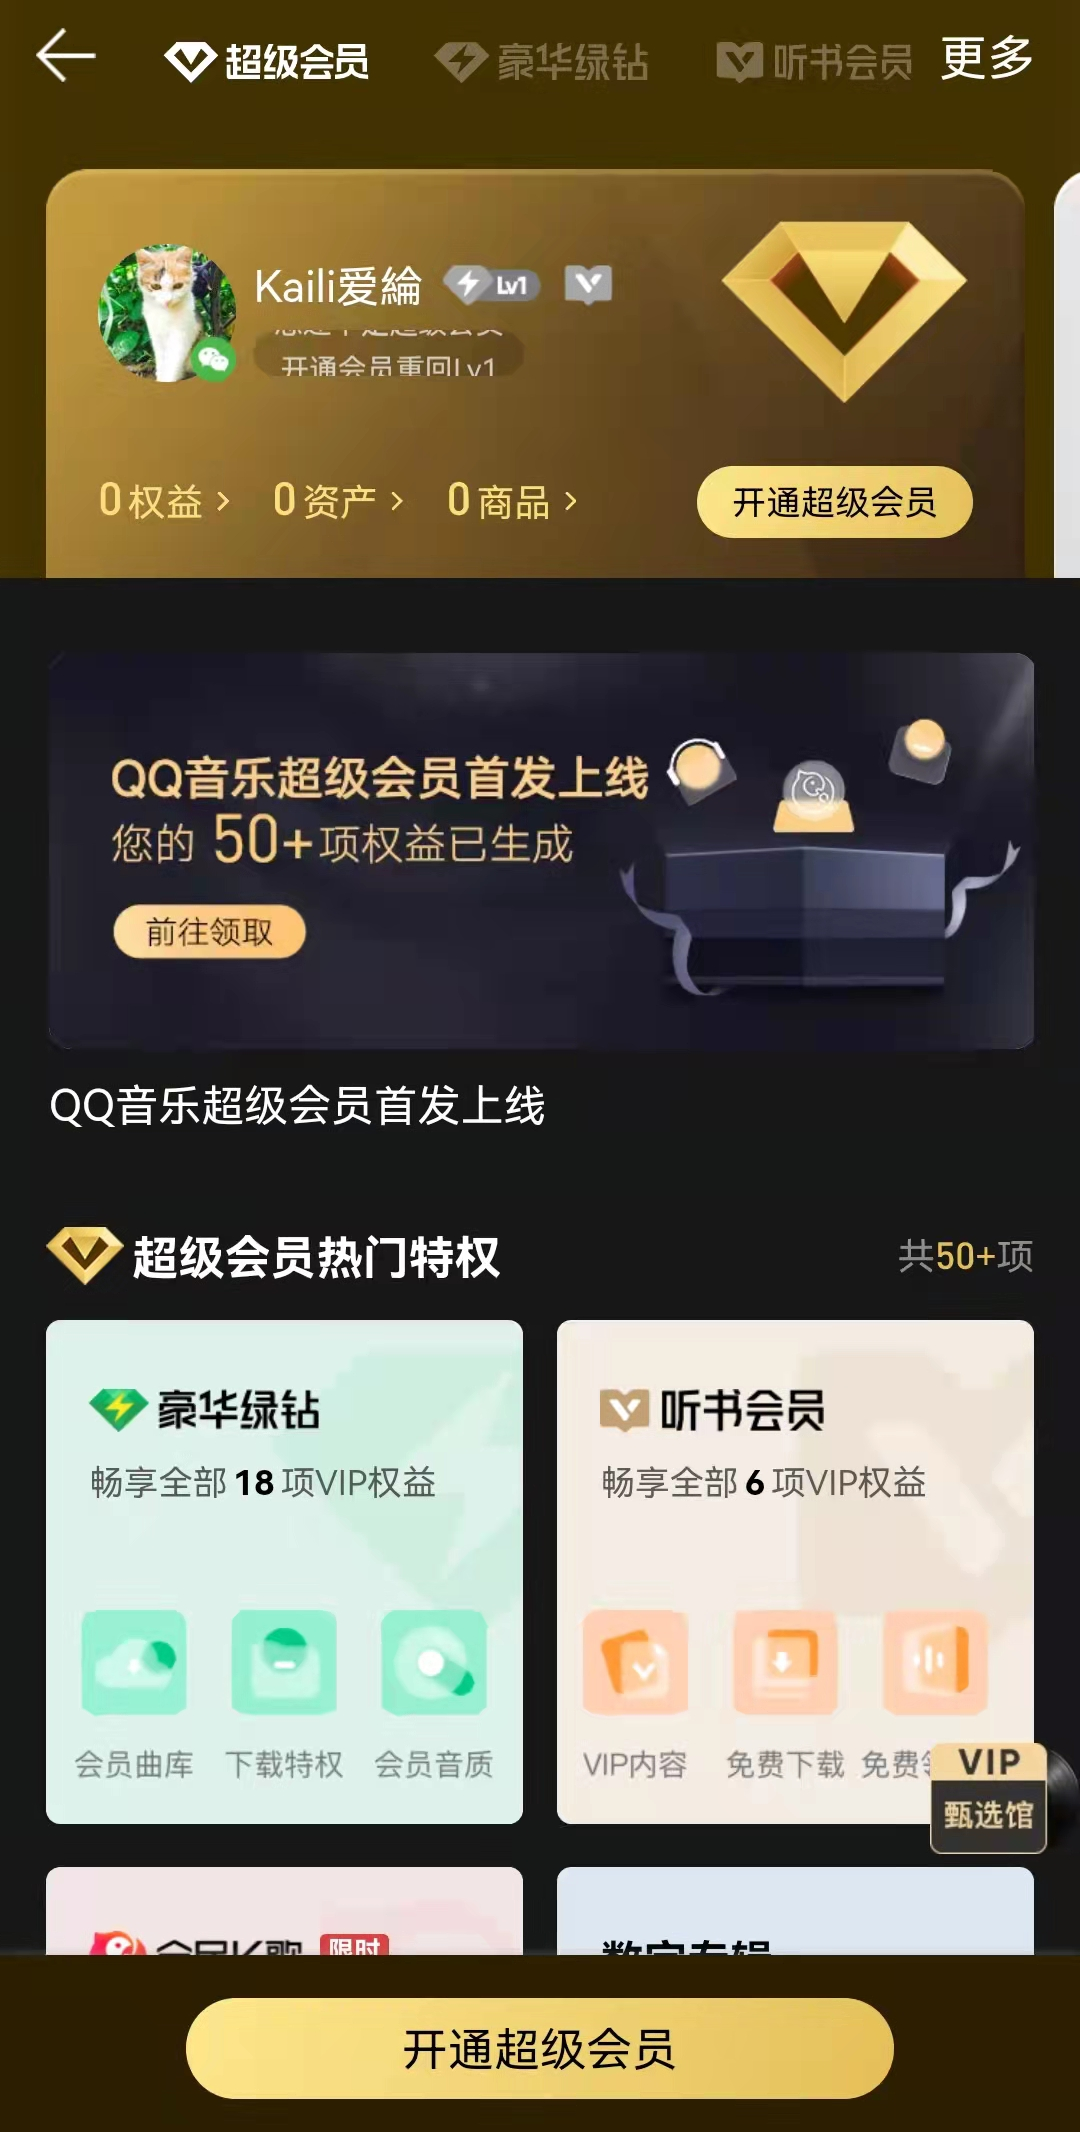 QQ超级会员新增SVIP10 1198元永久激活三星 | ICHUK